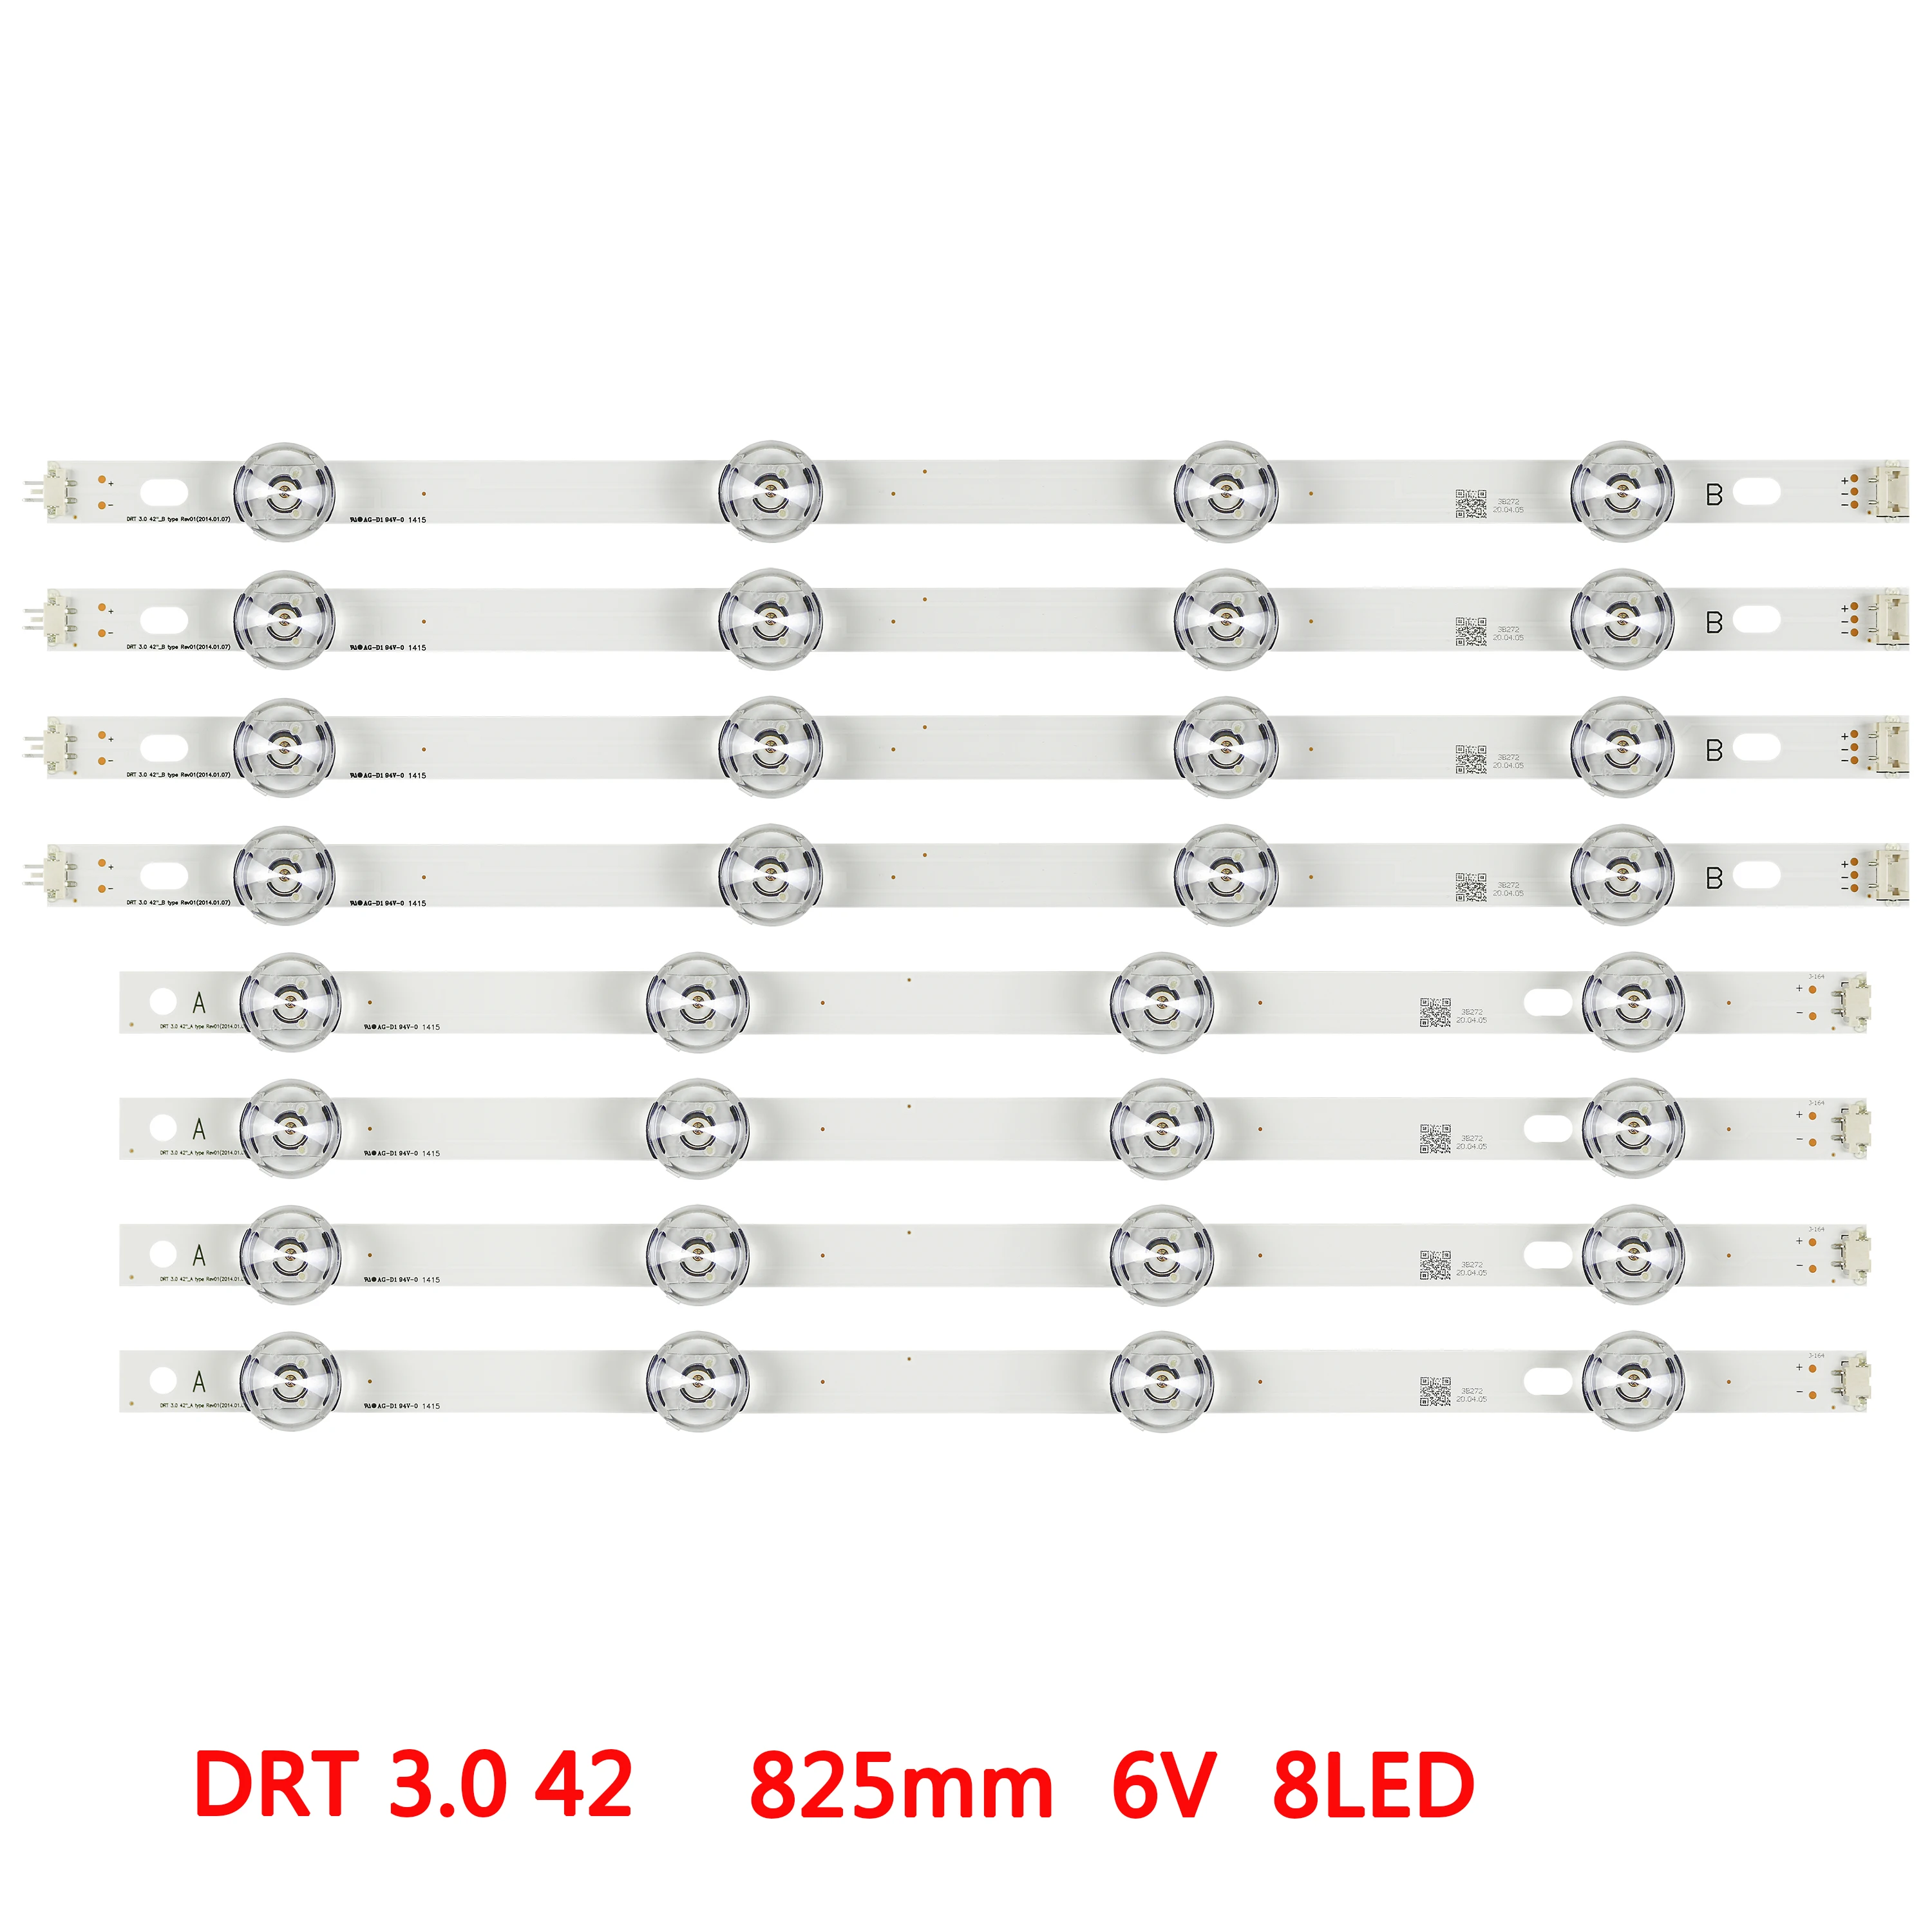 LED backlight strip for LG innotek DRT 3.0 42